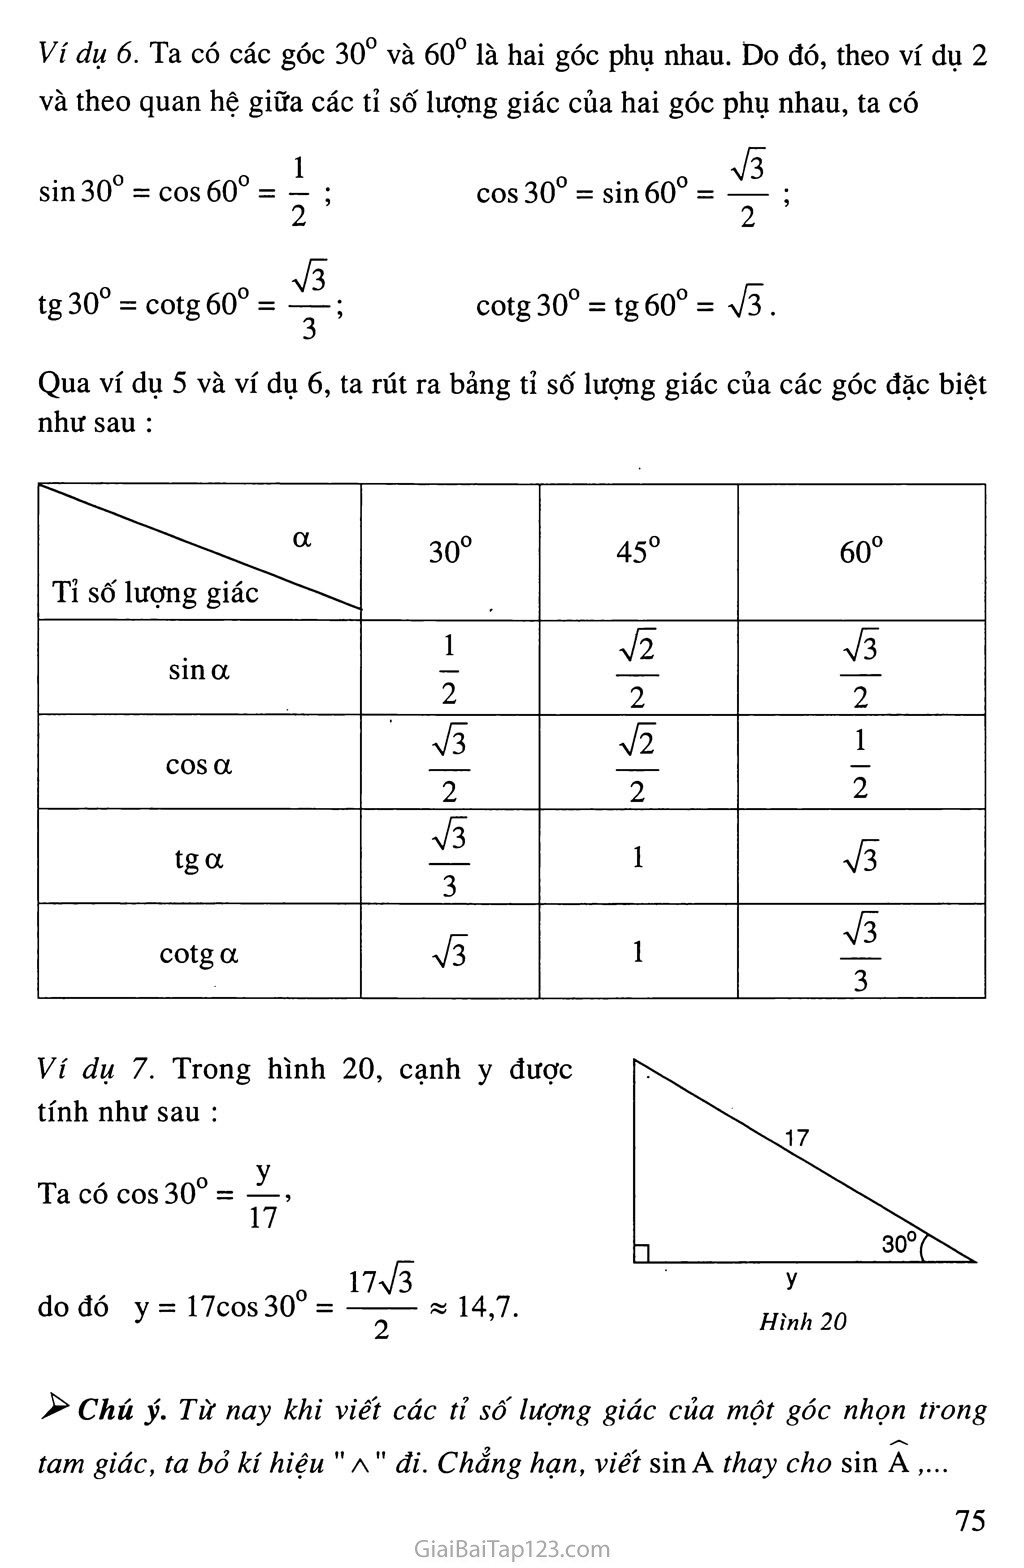 Bài 2. Tỉ số lượng giác của góc nhọn trang 5